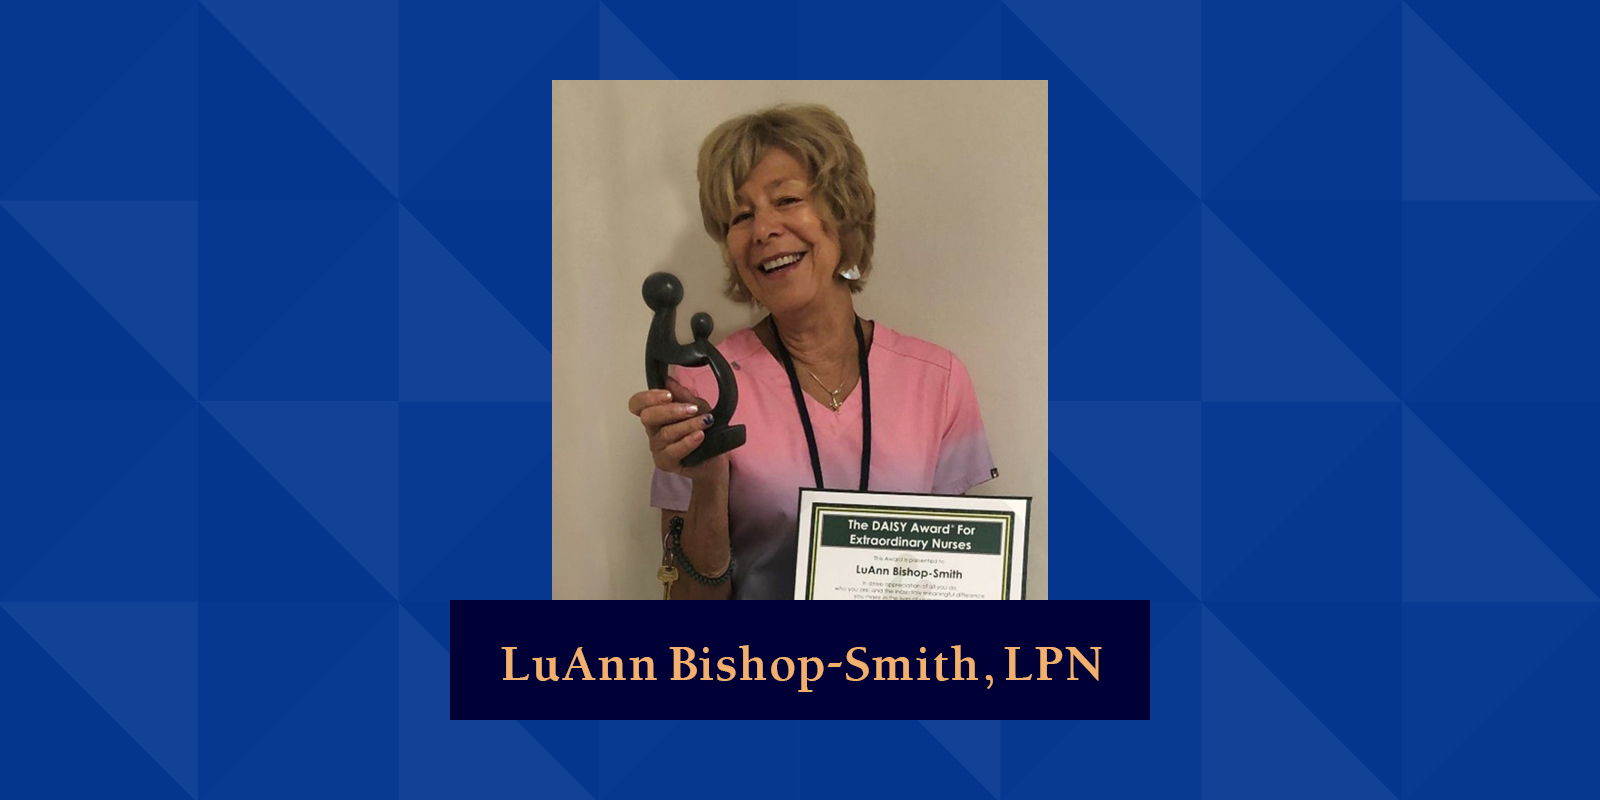 LuAnn Bishop-Smith, LPN